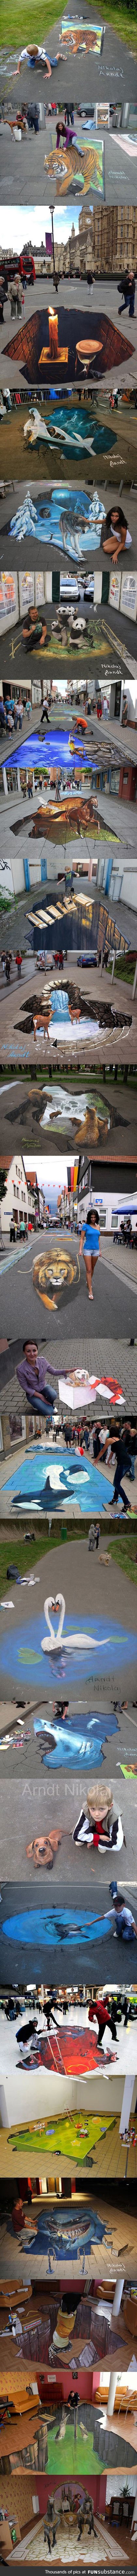 Best of 3D street art